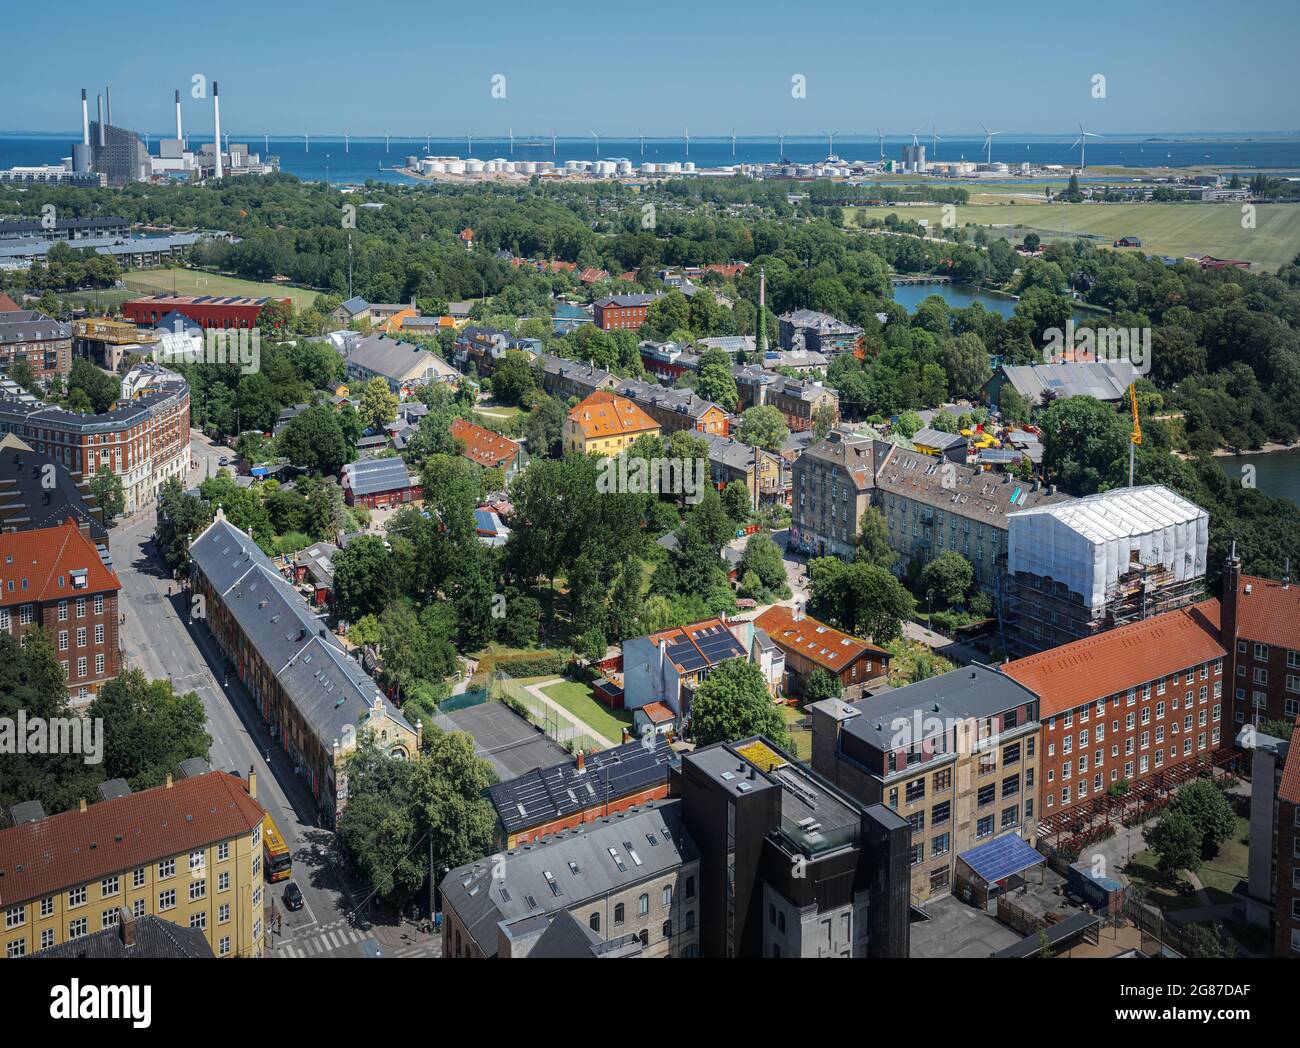 Luftaufnahme von Freetown Christiania - Kopenhagen, Dänemark Stockfoto